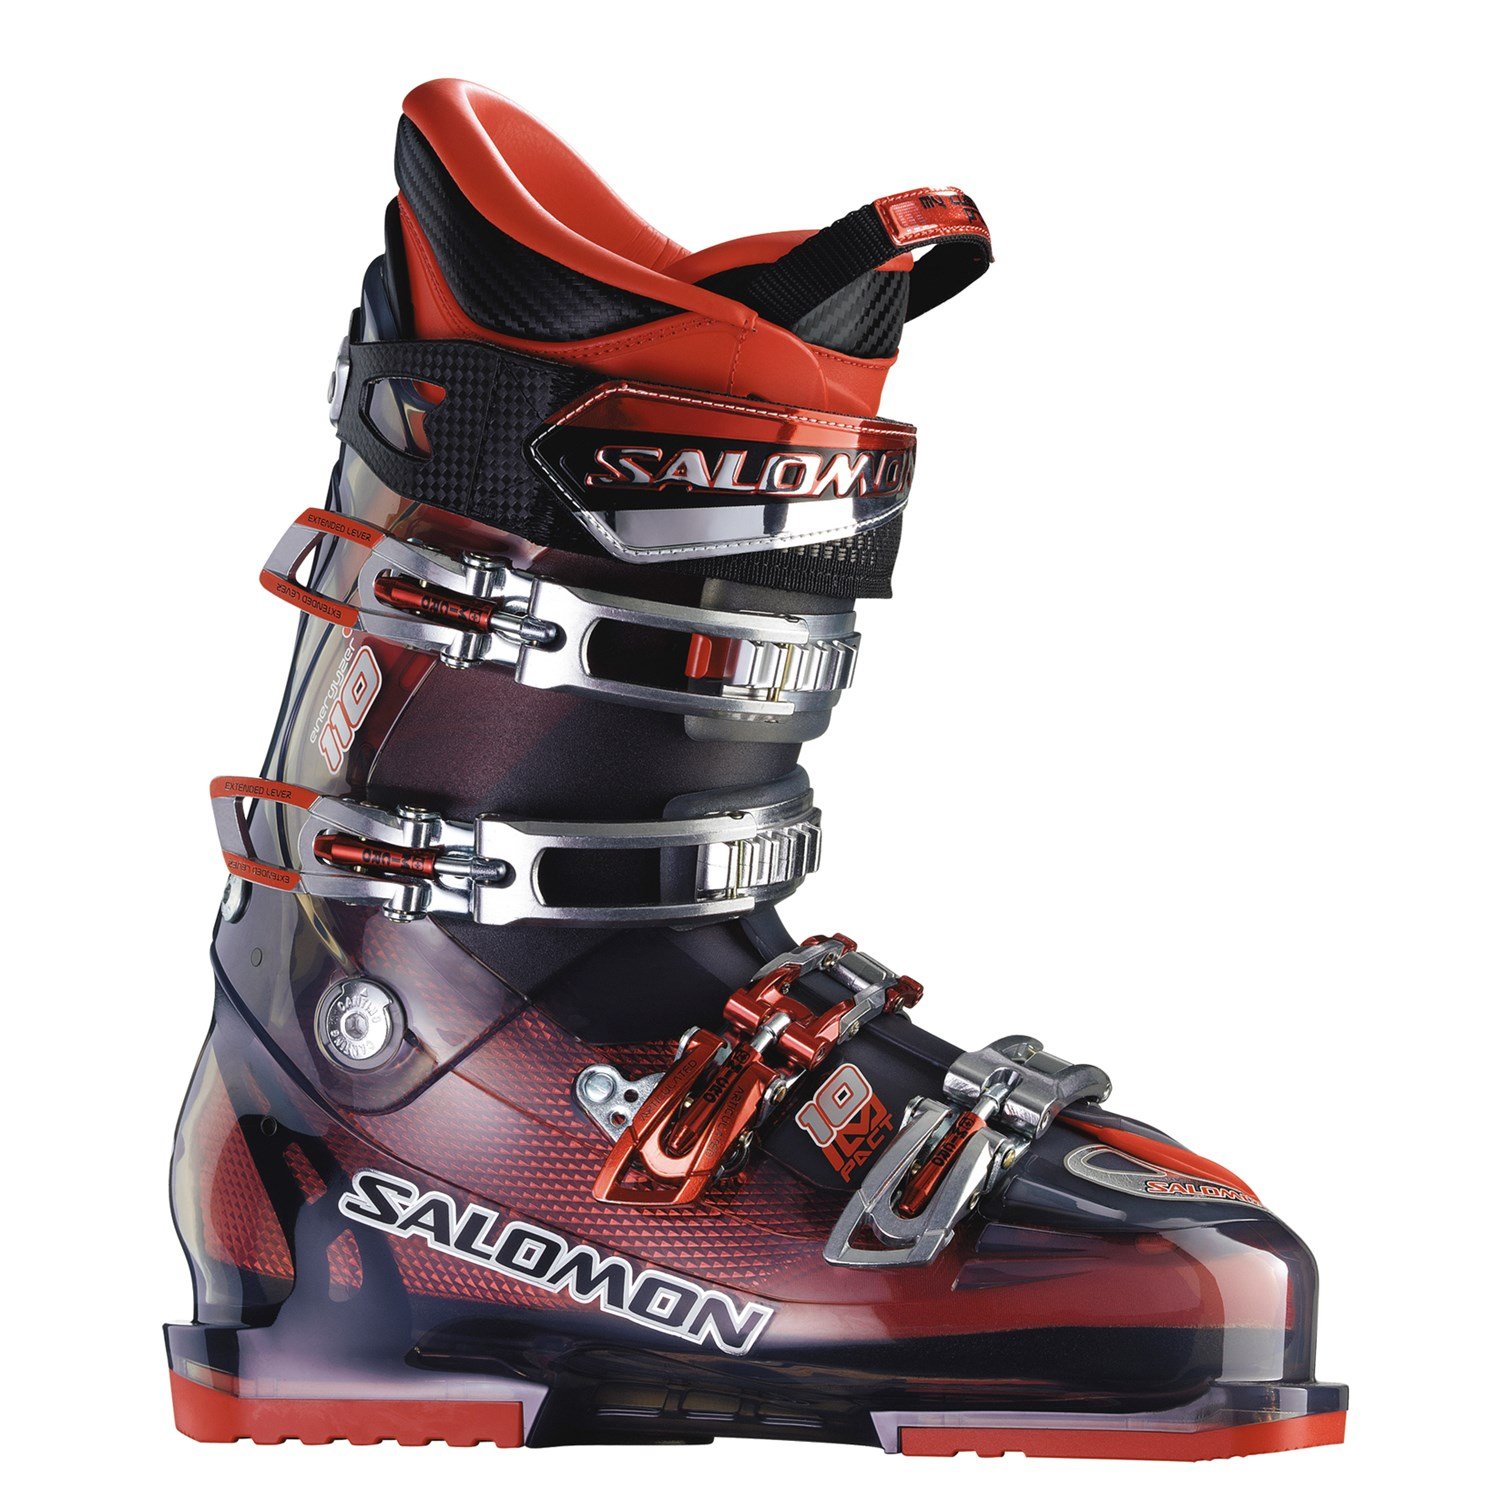 Salomon Impact Ski Boots 2009 | evo